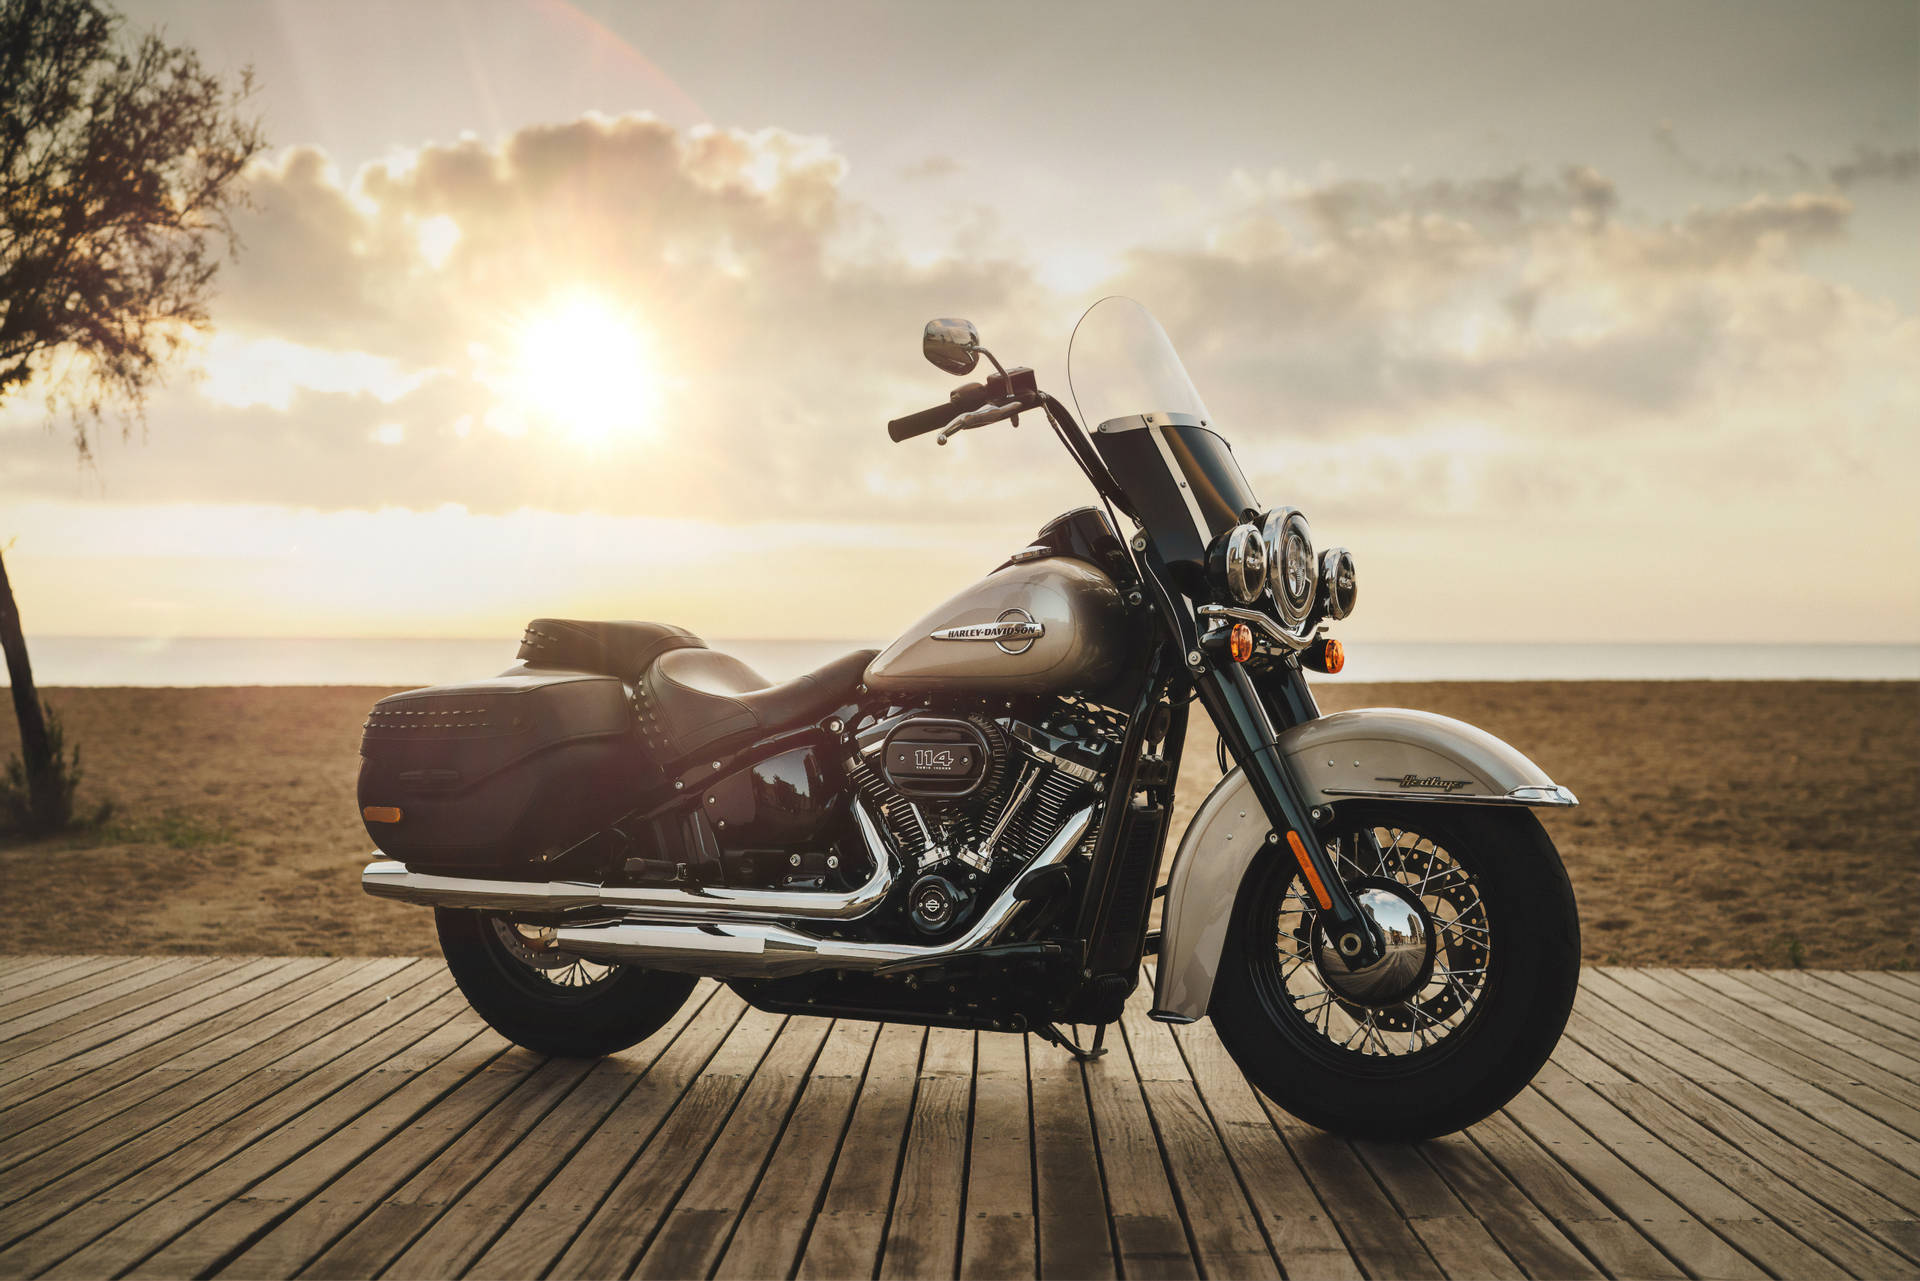 Harley Davidson During Sunset